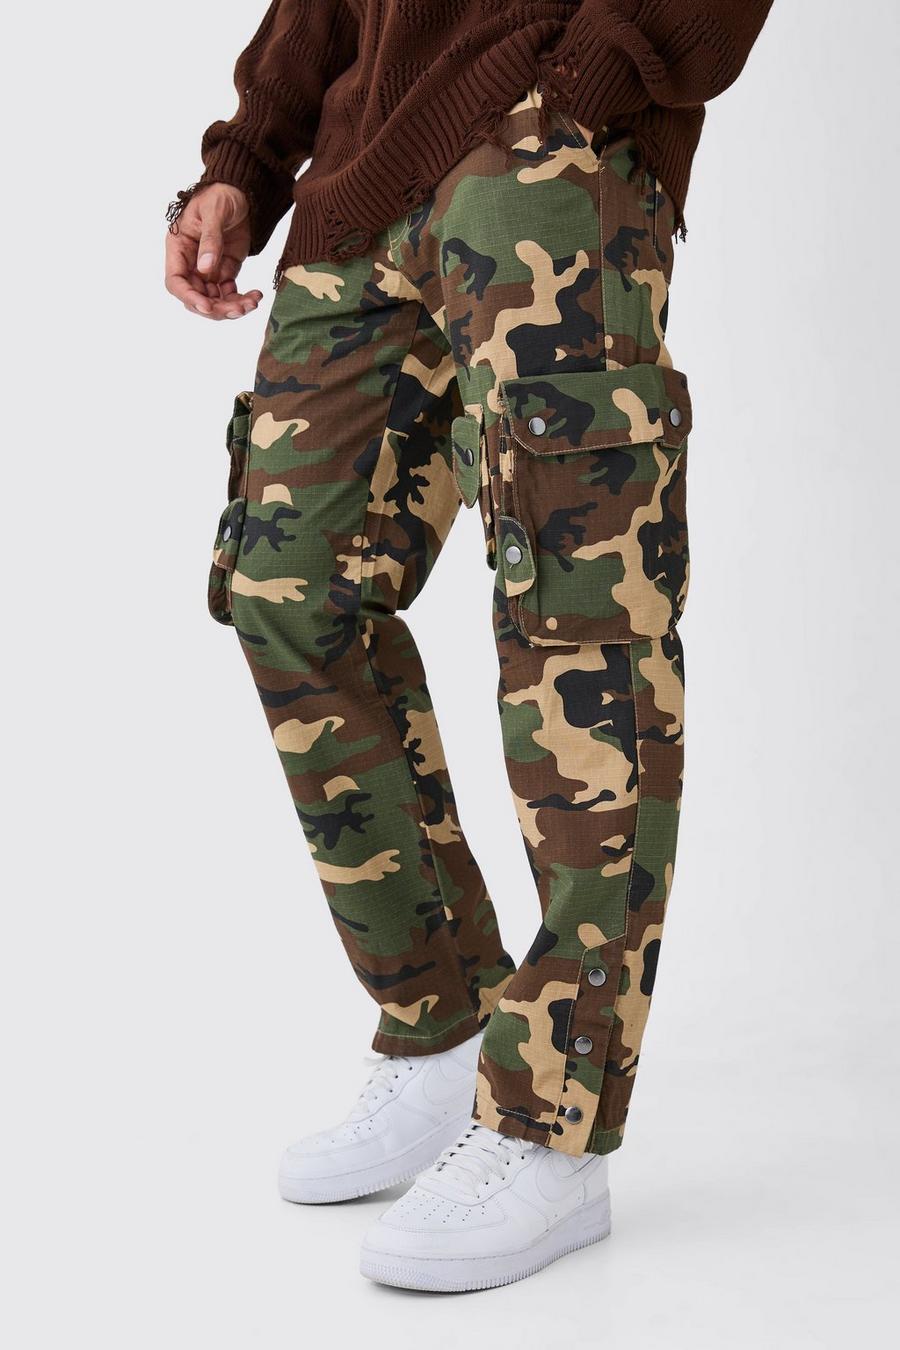 Pantaloni dritti in nylon ripstop in fantasia militare in rilievo con dettagli stile Cargo, Khaki image number 1